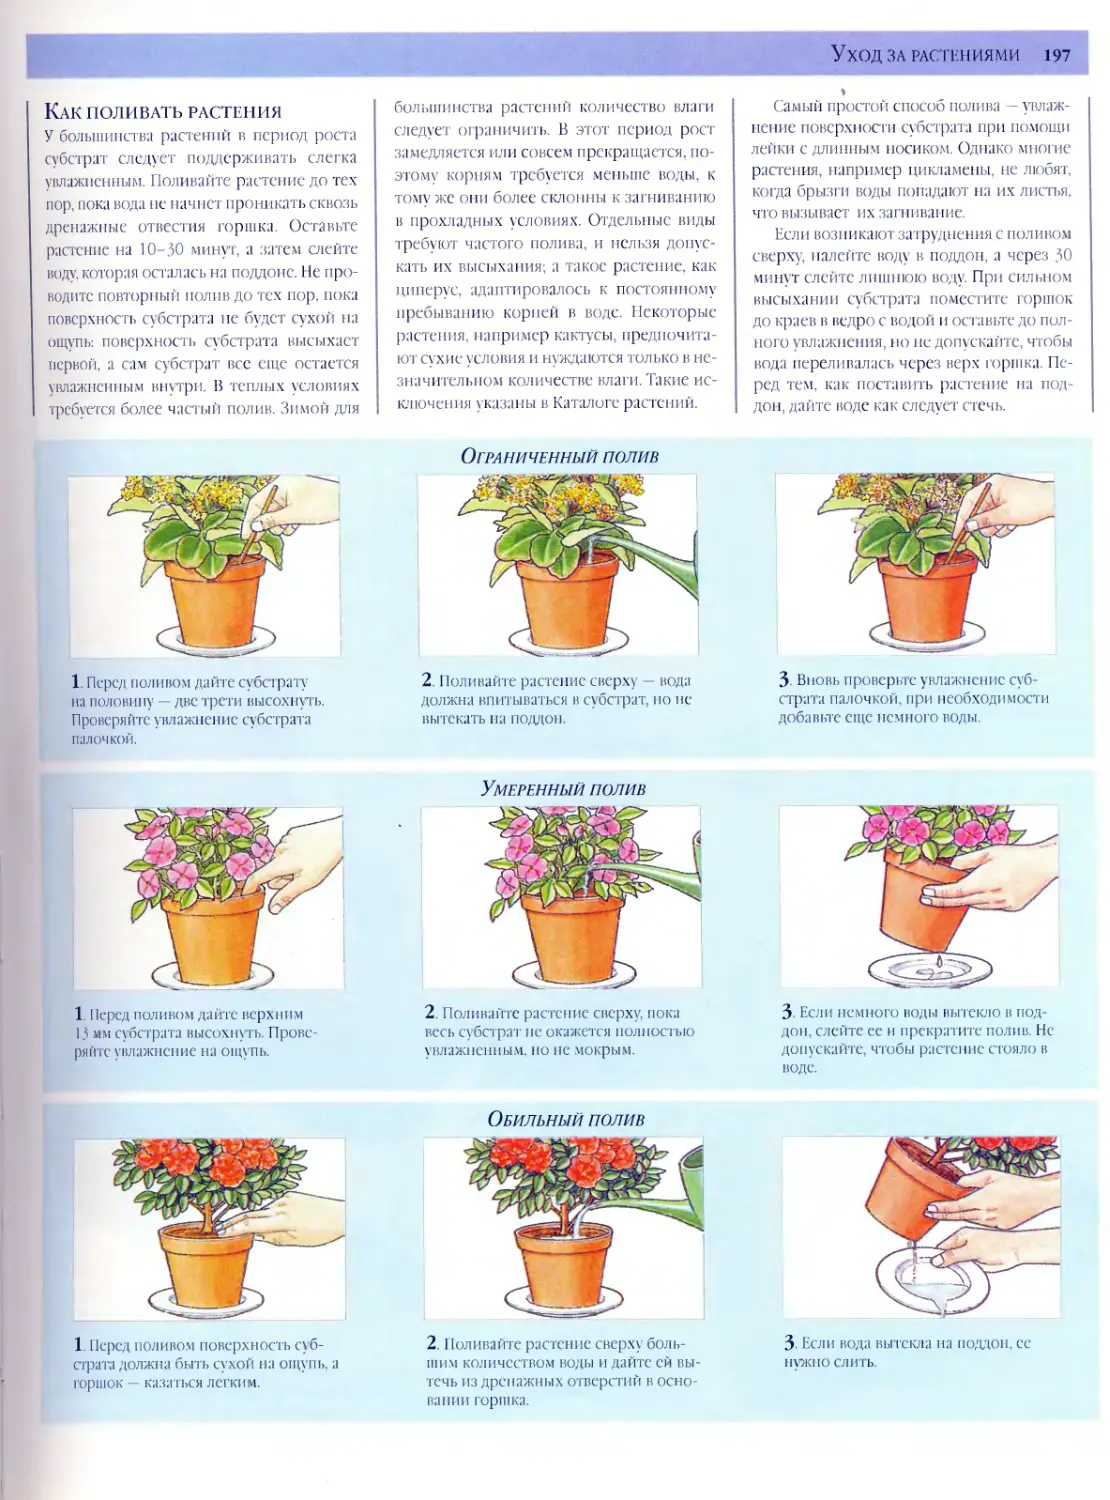 Как лучше поливать цветы сверху или снизу